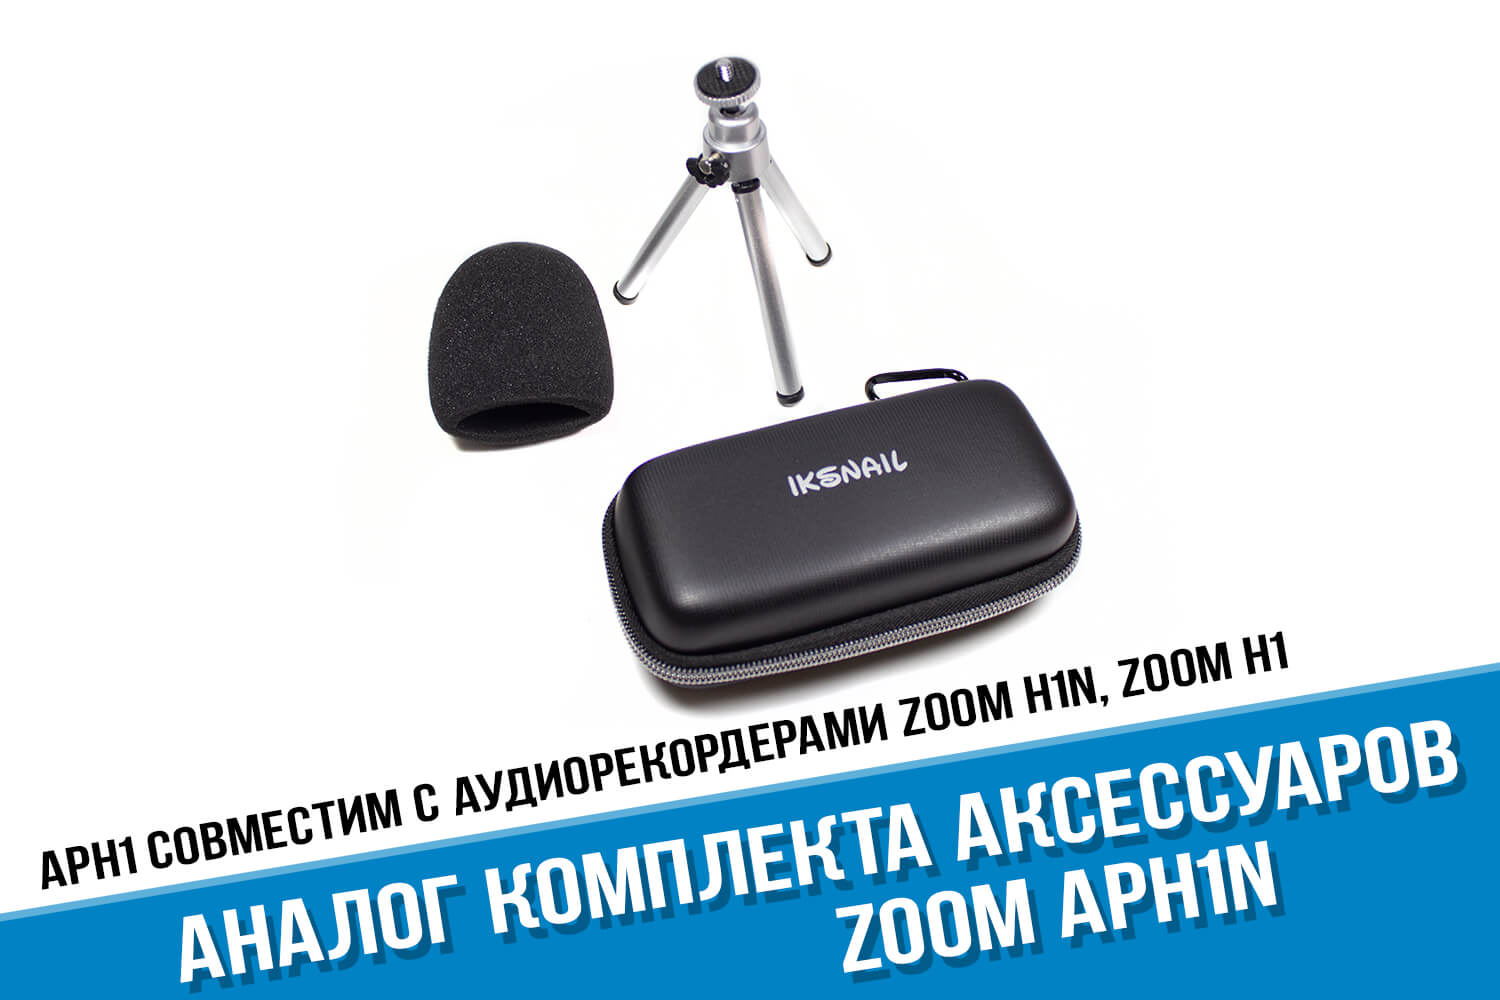 Комплект аксессуаров Zoom H1n для рекордера Zoom H1n